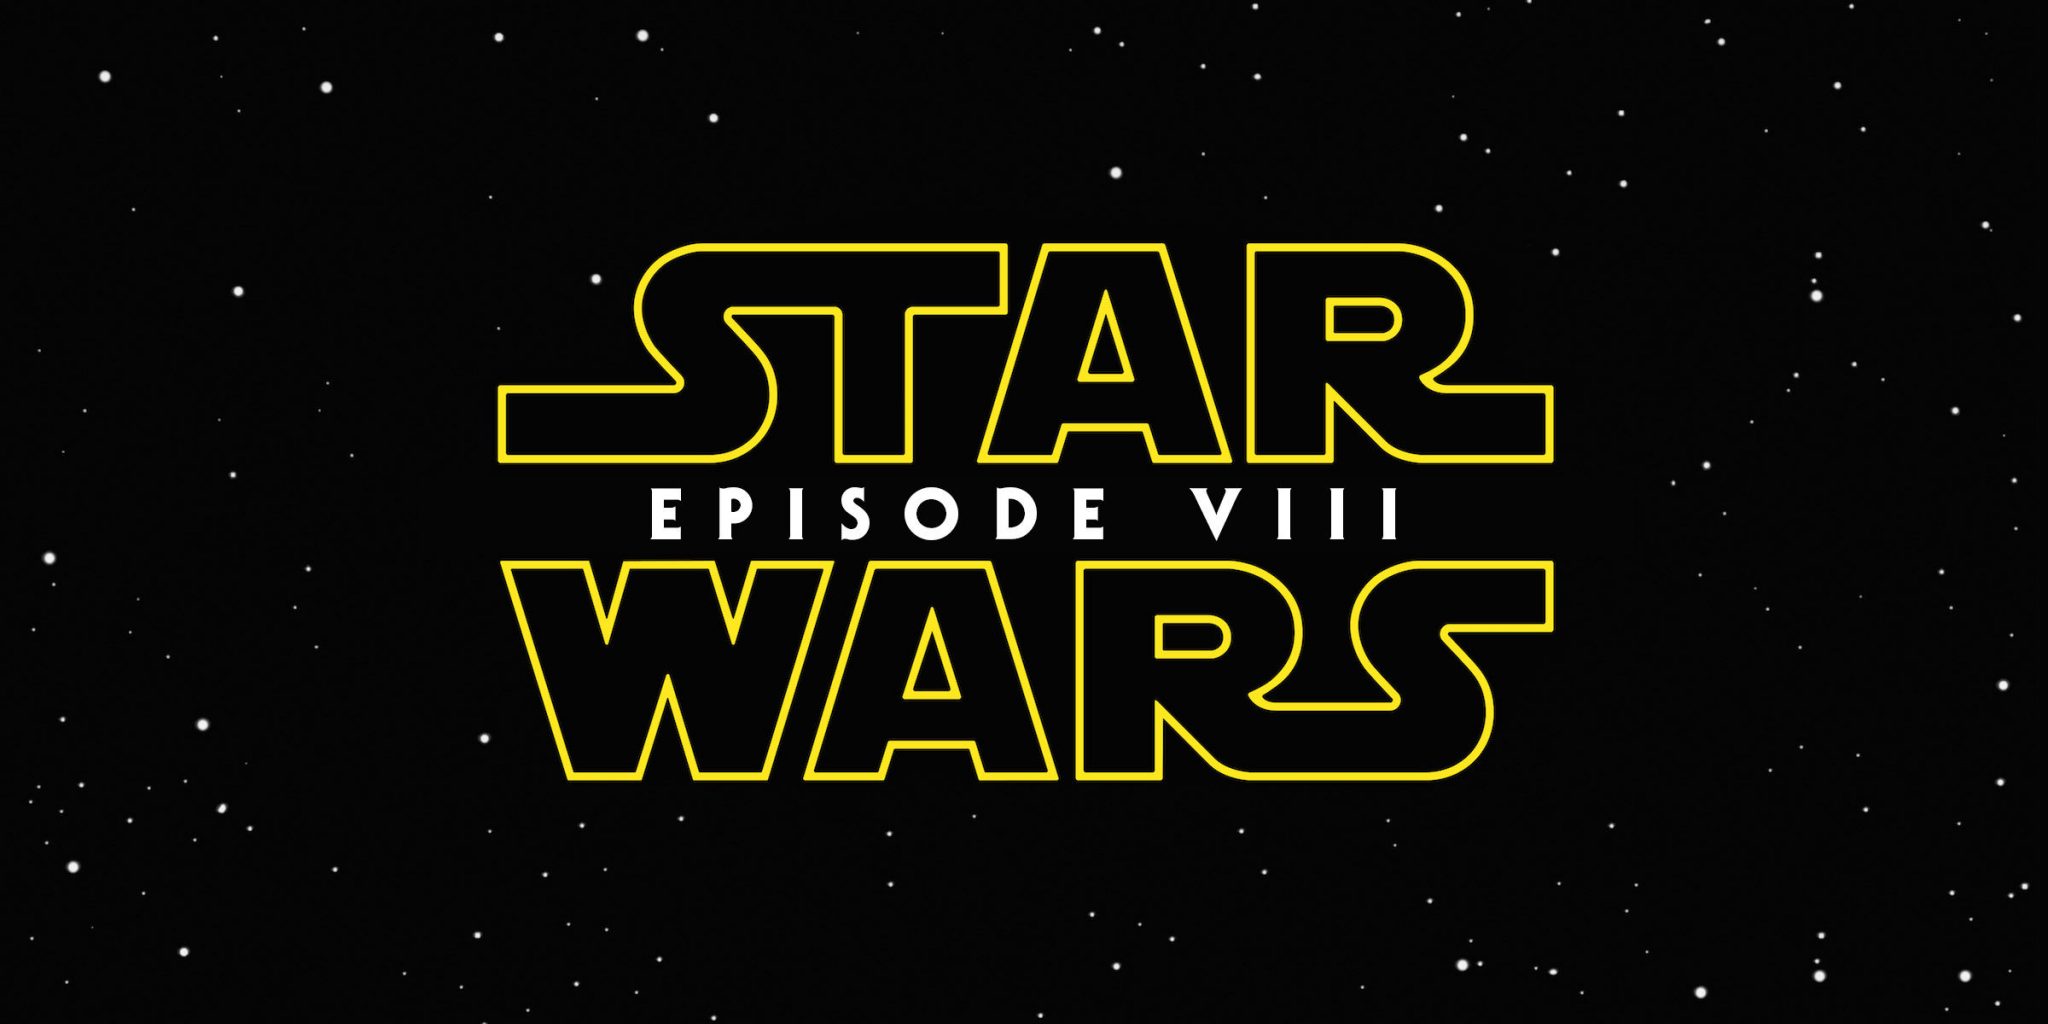 Megtudtuk, hogy mi lesz a Star Wars Episode VIII címe